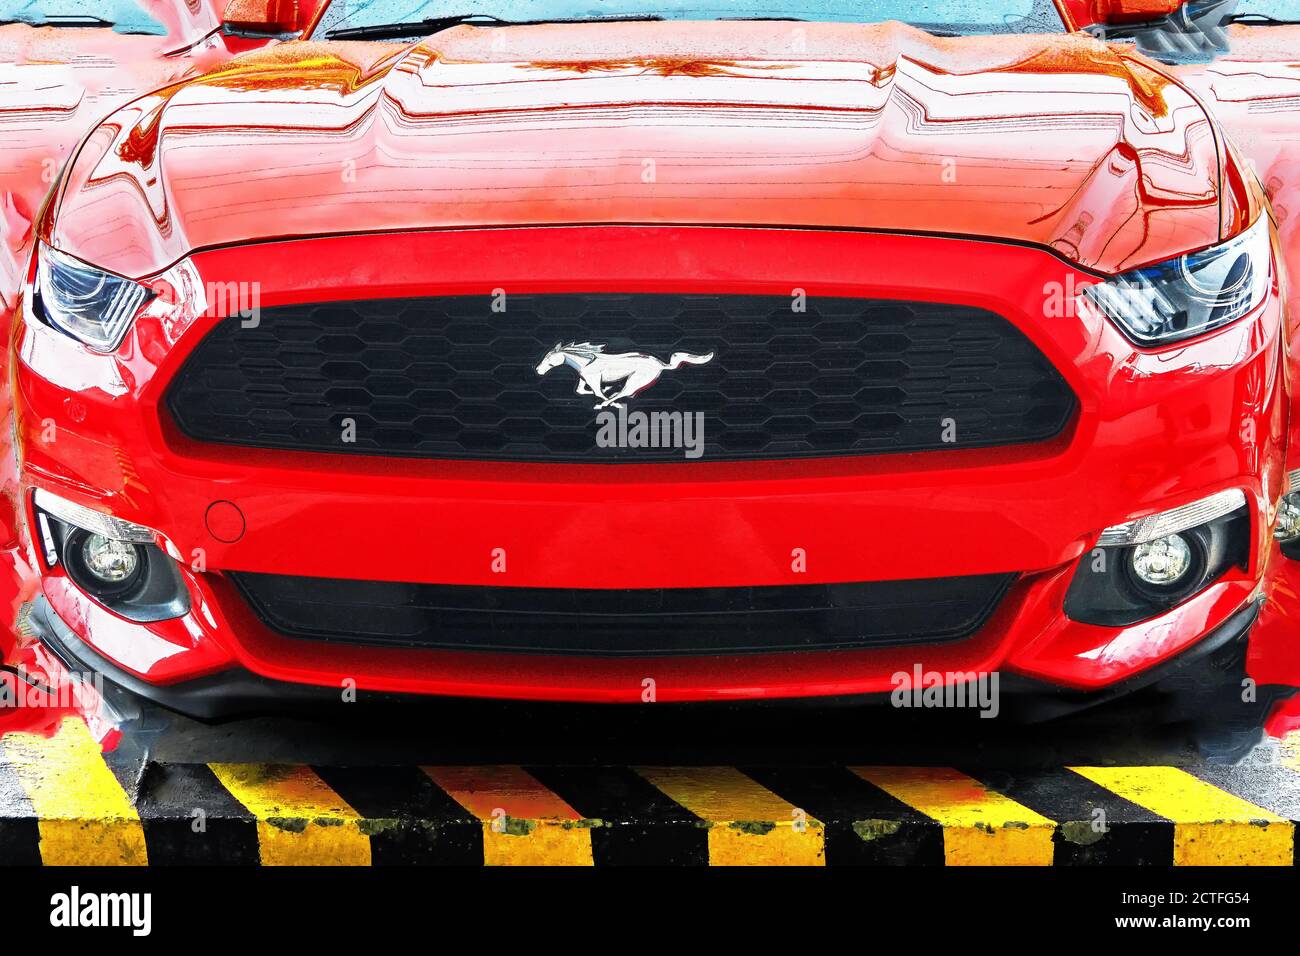 Vista isolata di un'auto sportiva Ford Mustang di colore rosso, fotografata dall'angolo anteriore basso, ritoccata ad un collage, con simbolo di cavallo prominente Foto Stock